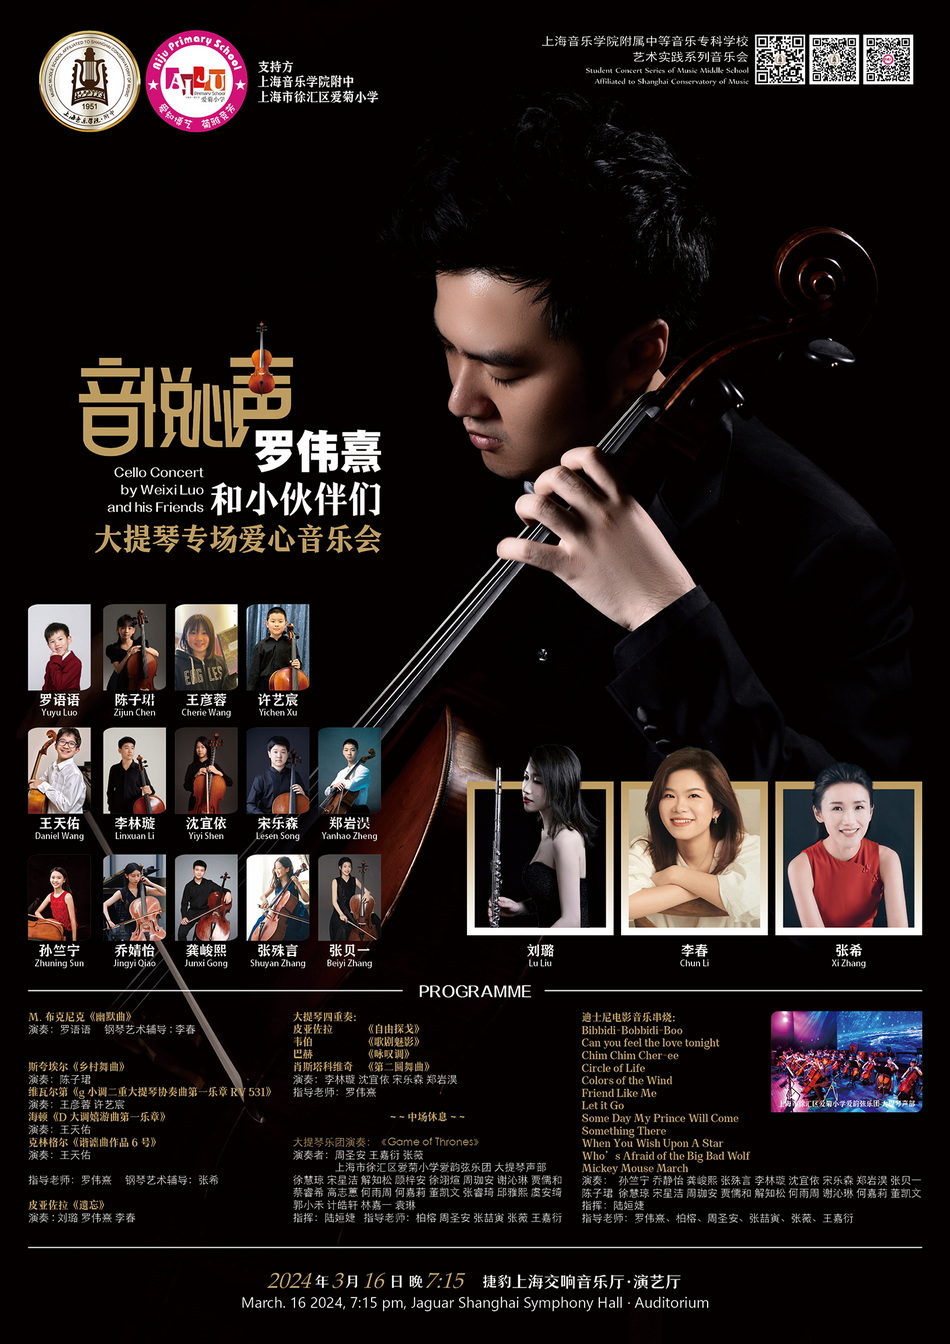 03-16 “音悦心声”罗伟熹和小伙伴们大提琴专场爱心音乐会.